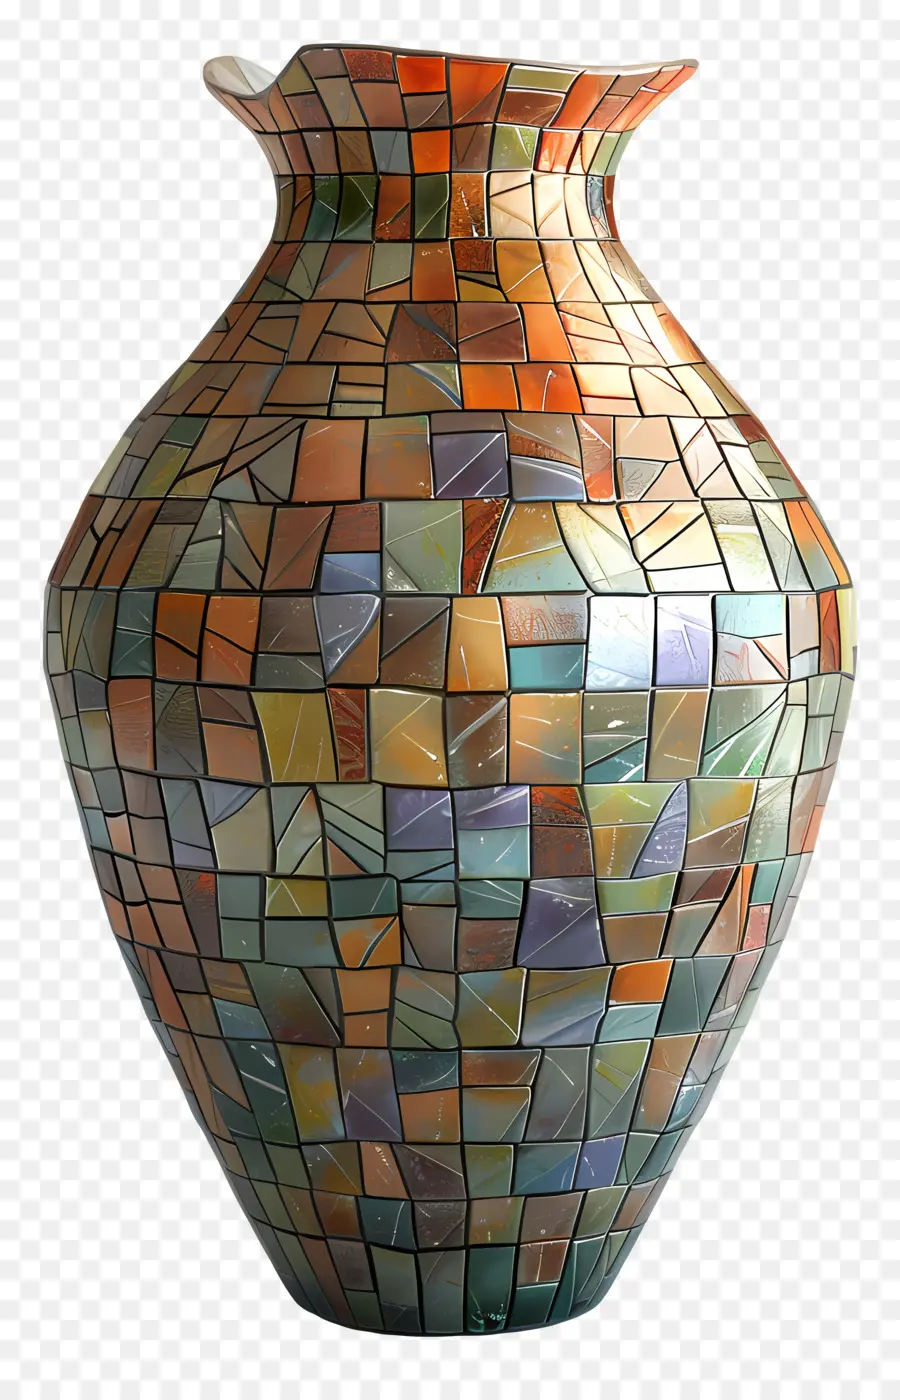 Bình khảm bình gốm lớn Bình gốm khảm hoa văn đầy màu sắc bề mặt có kết cấu bề mặt - Bình gốm khảm đầy màu sắc với bề mặt có kết cấu